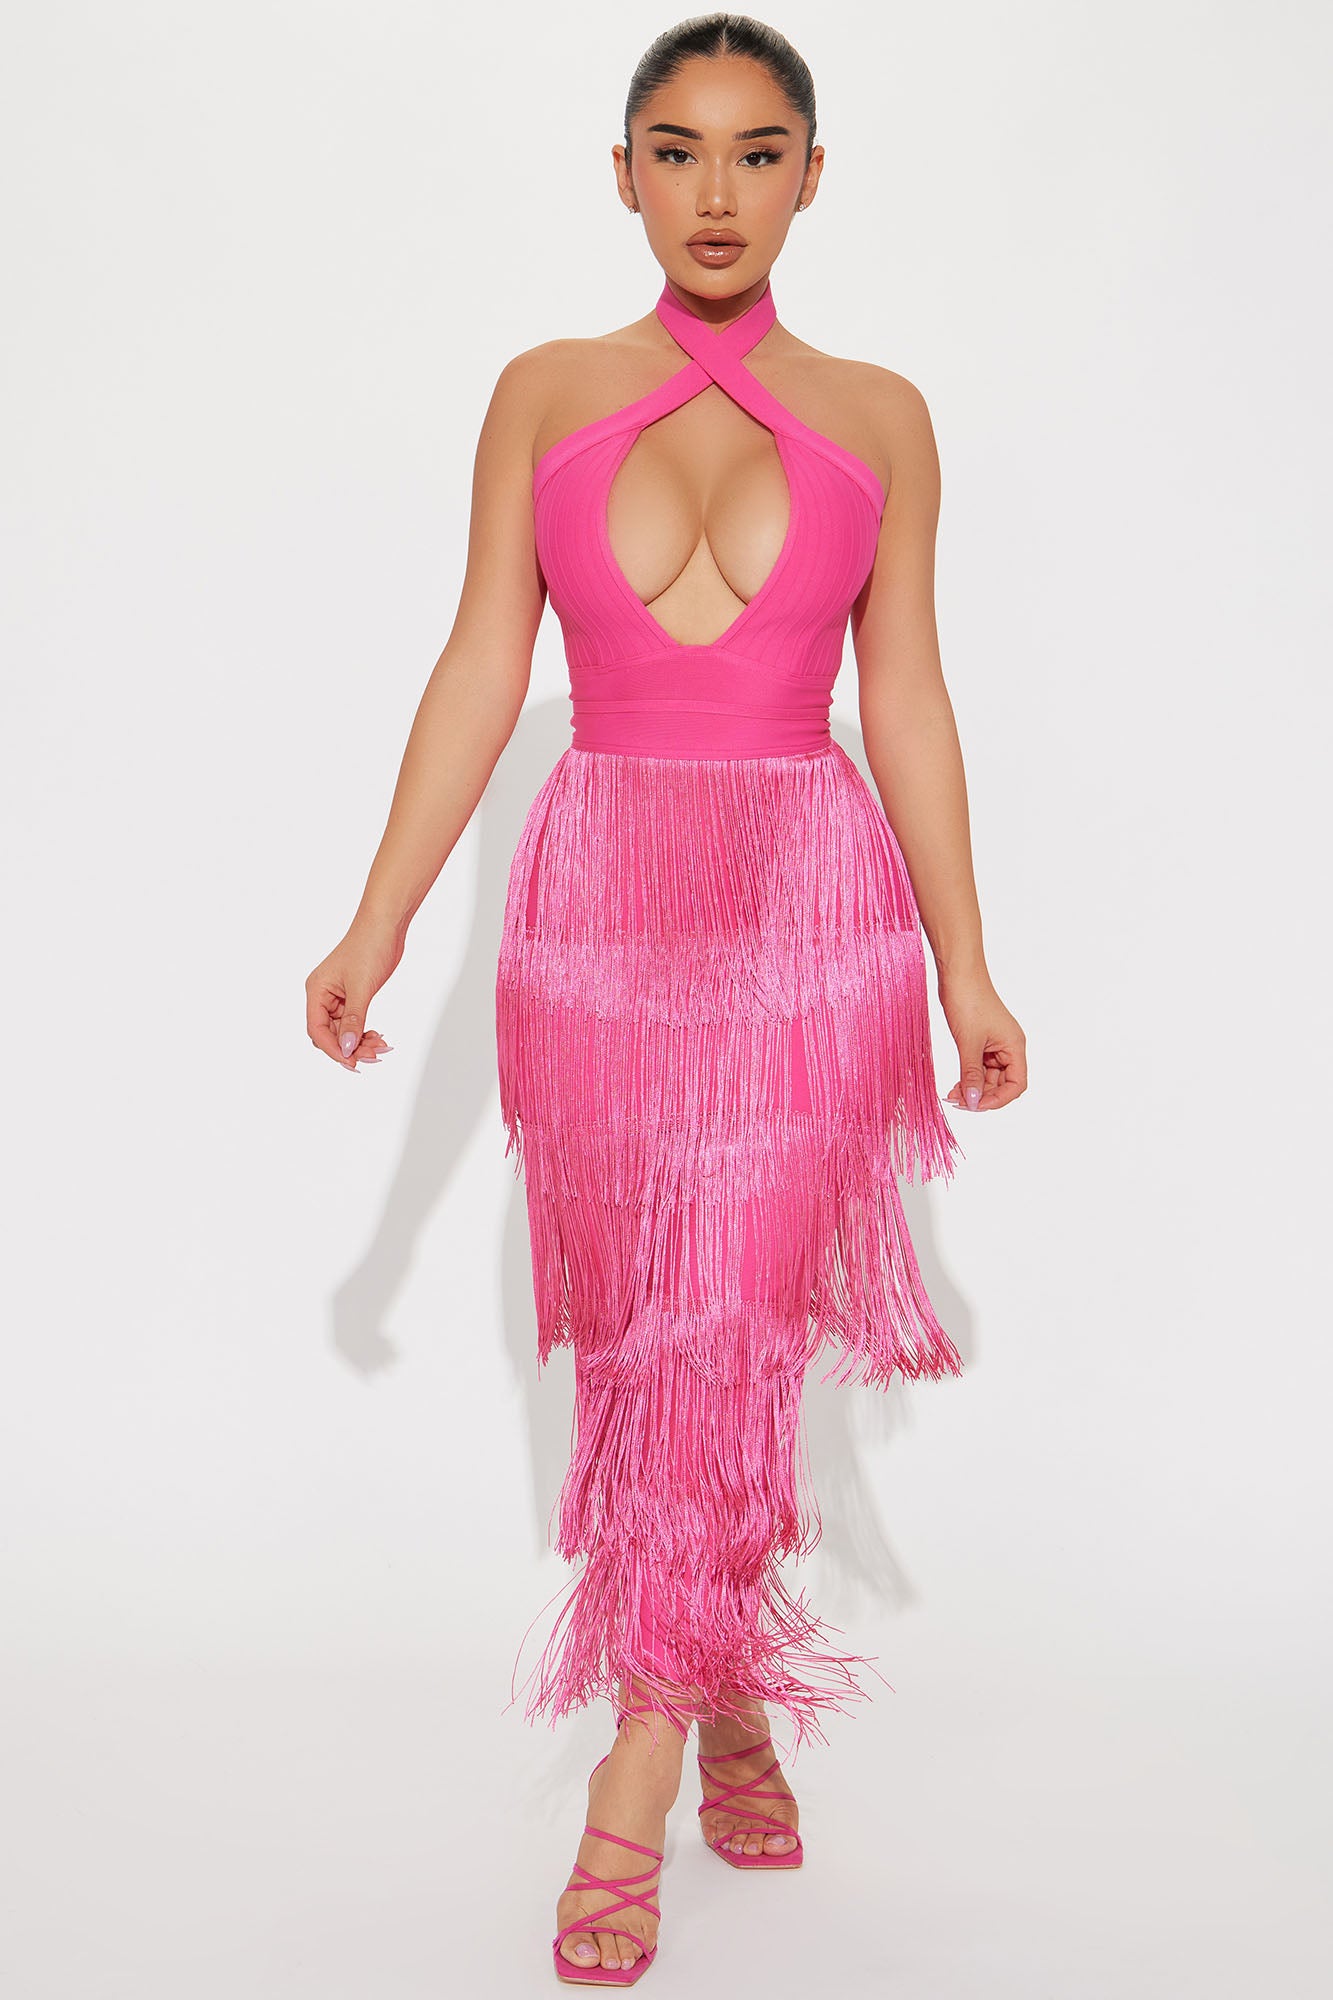 Victoria Bandage Midi Dress - Pink, Fashion Nova, Dresses